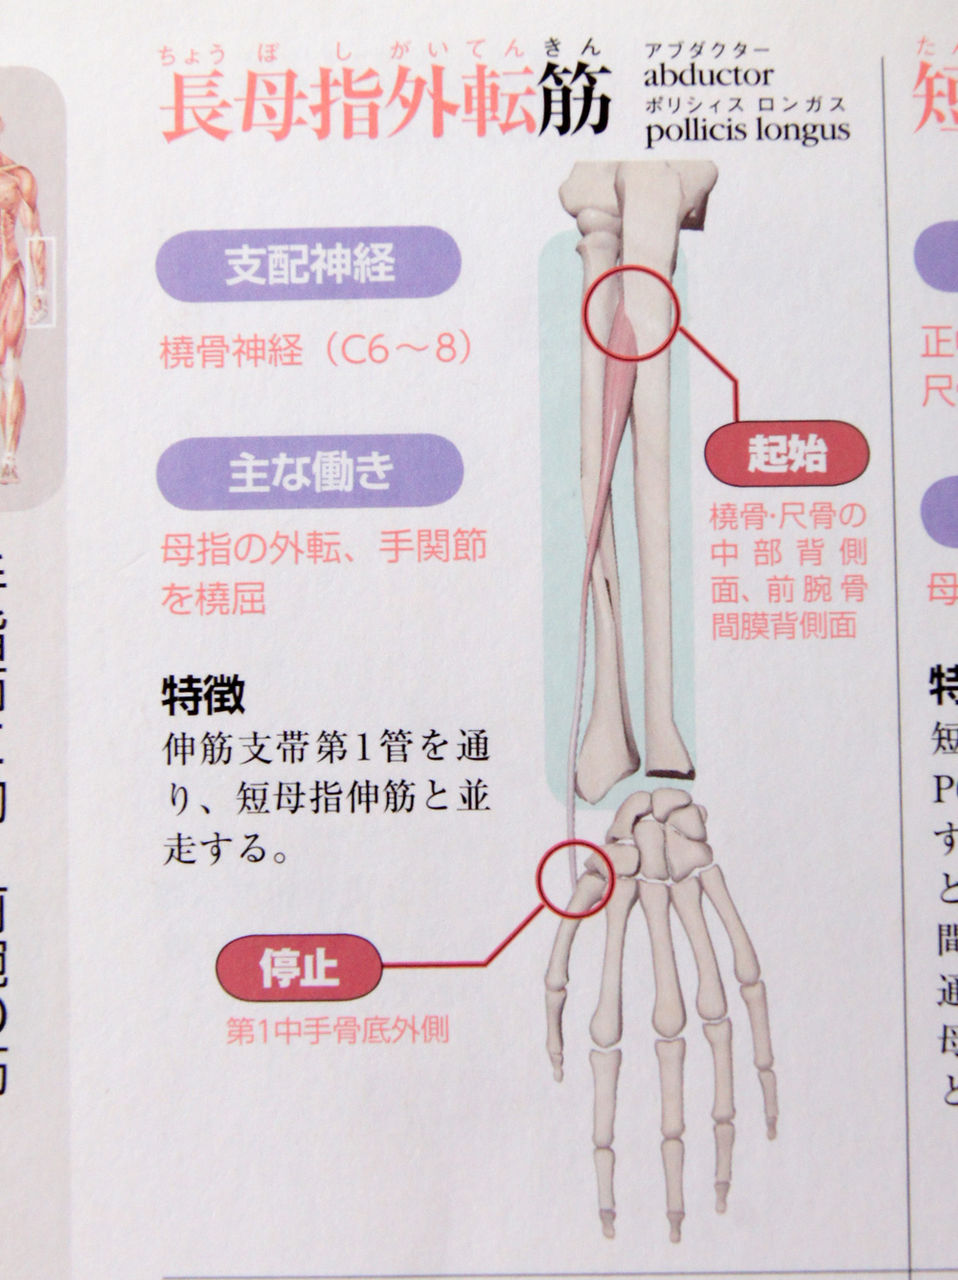 今日の上肢筋肉等身大模型レビューno 49 長母指外転筋 人体解剖学など